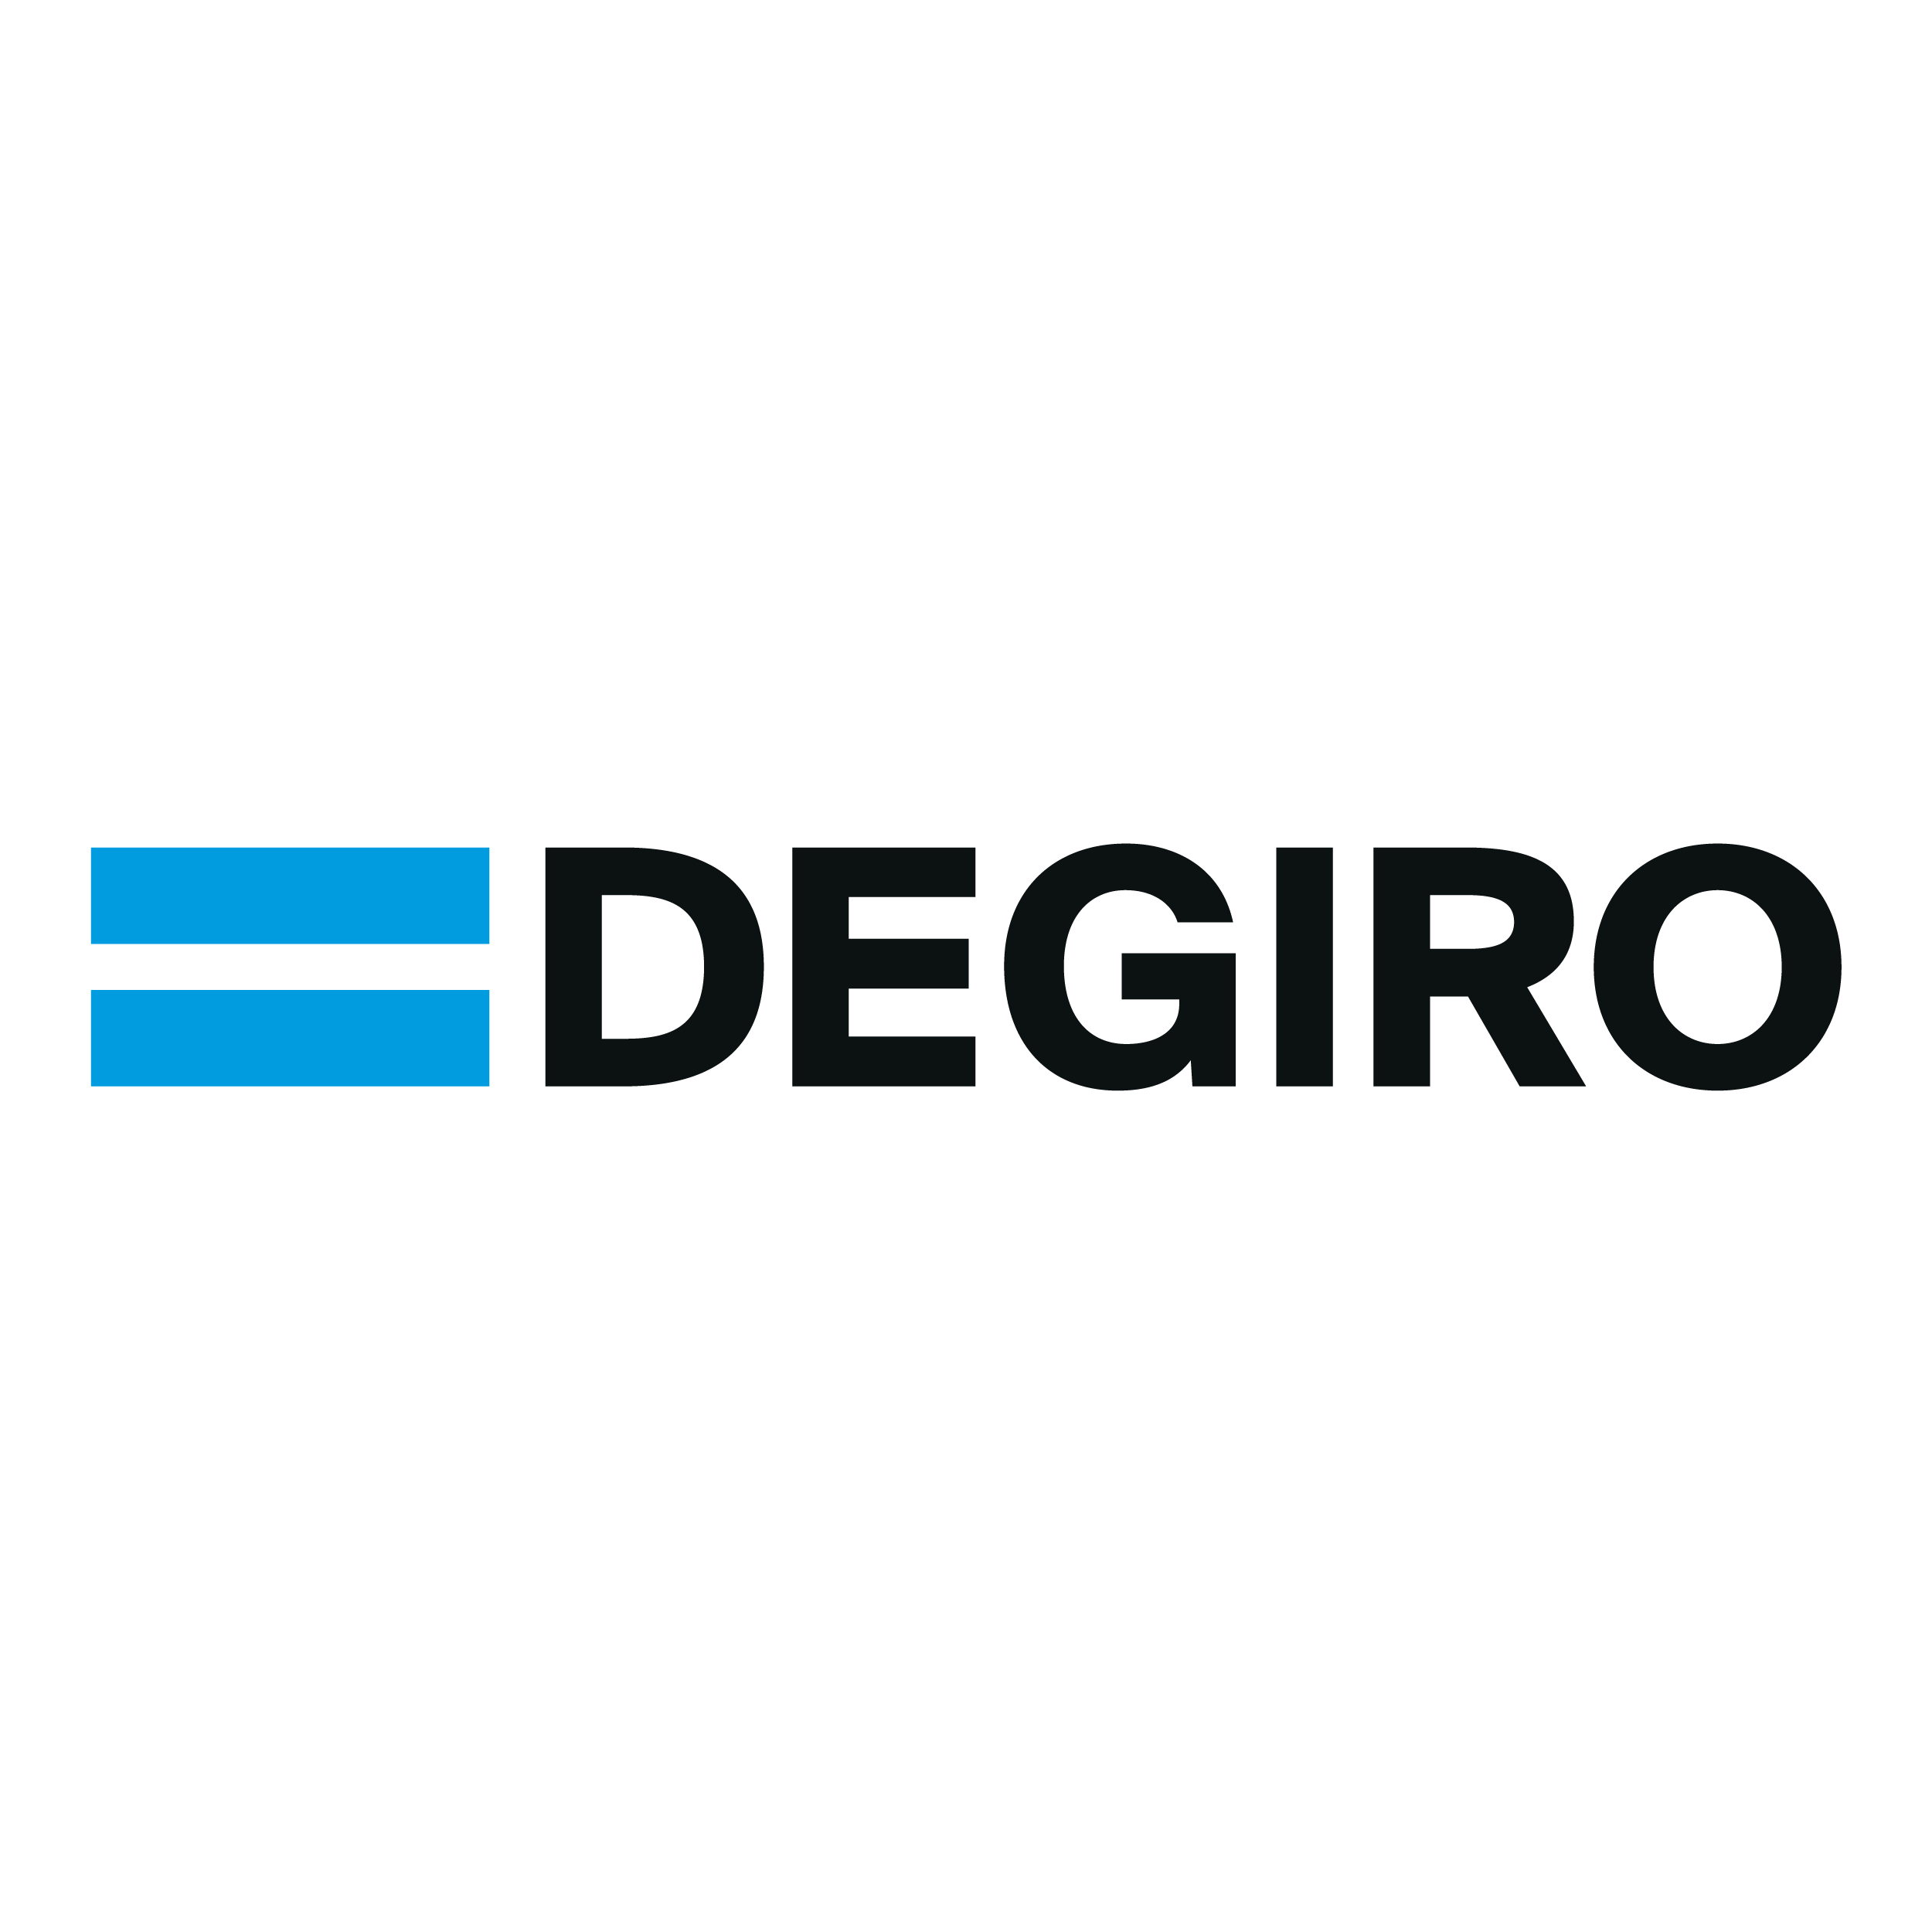 DEGIRO sammanfattar vanligtvis varje månad, men den här gången tittar DEGIRO på mest omsatta aktierna hos DEGIRO H1 2021 första halvåret 2021 som helhet. De första sex månaderna i år såg mycket annorlunda ut än de första sex månaderna 2020.